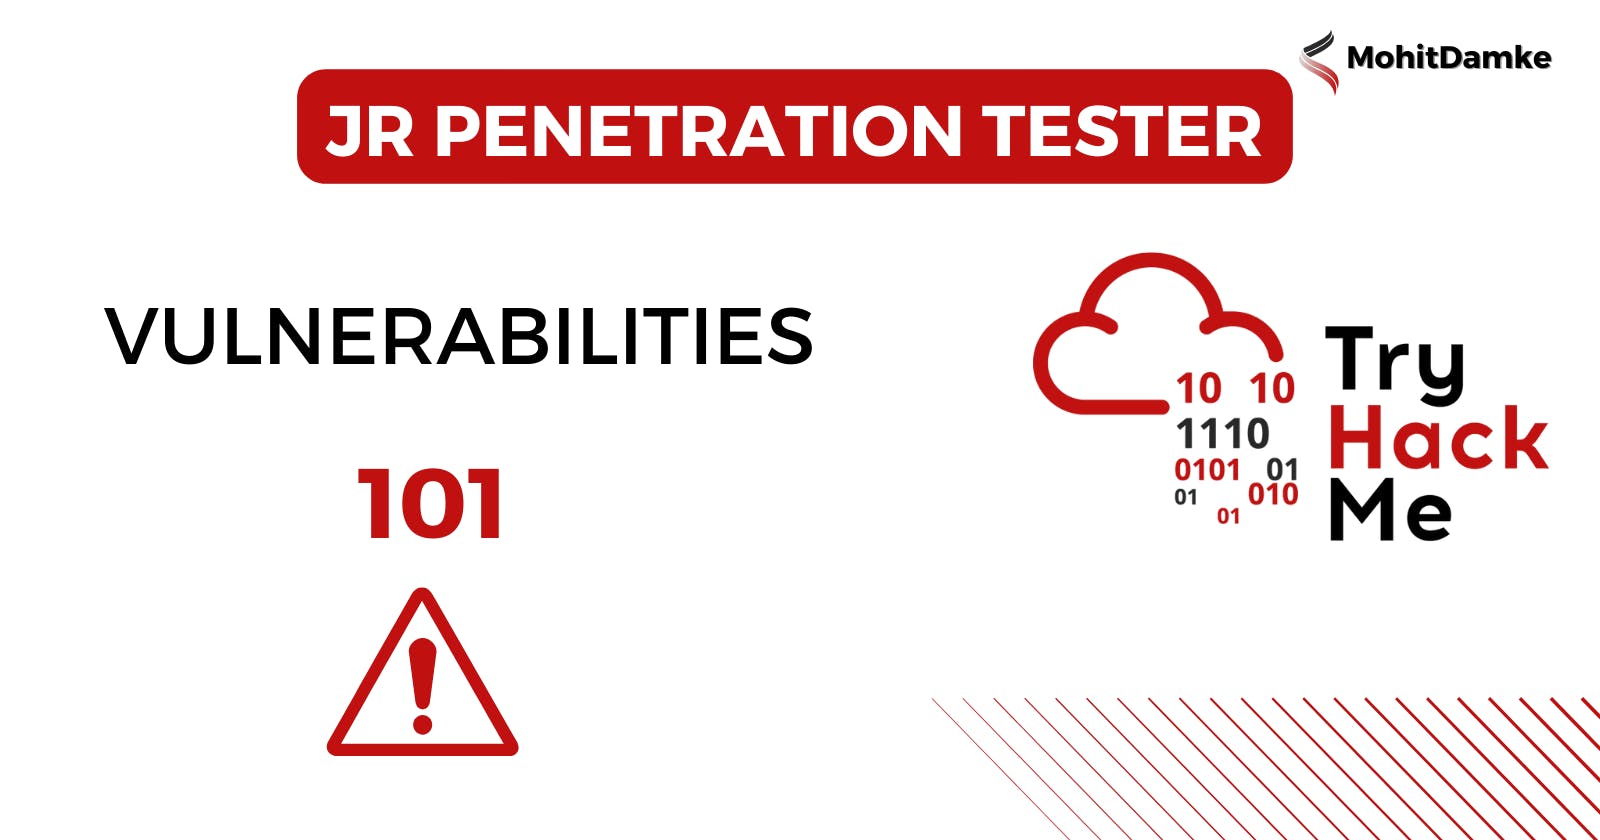 Try Hack Me |Jr Penetration Tester | 
Vulnerabilities 101 | By Mohit Damke